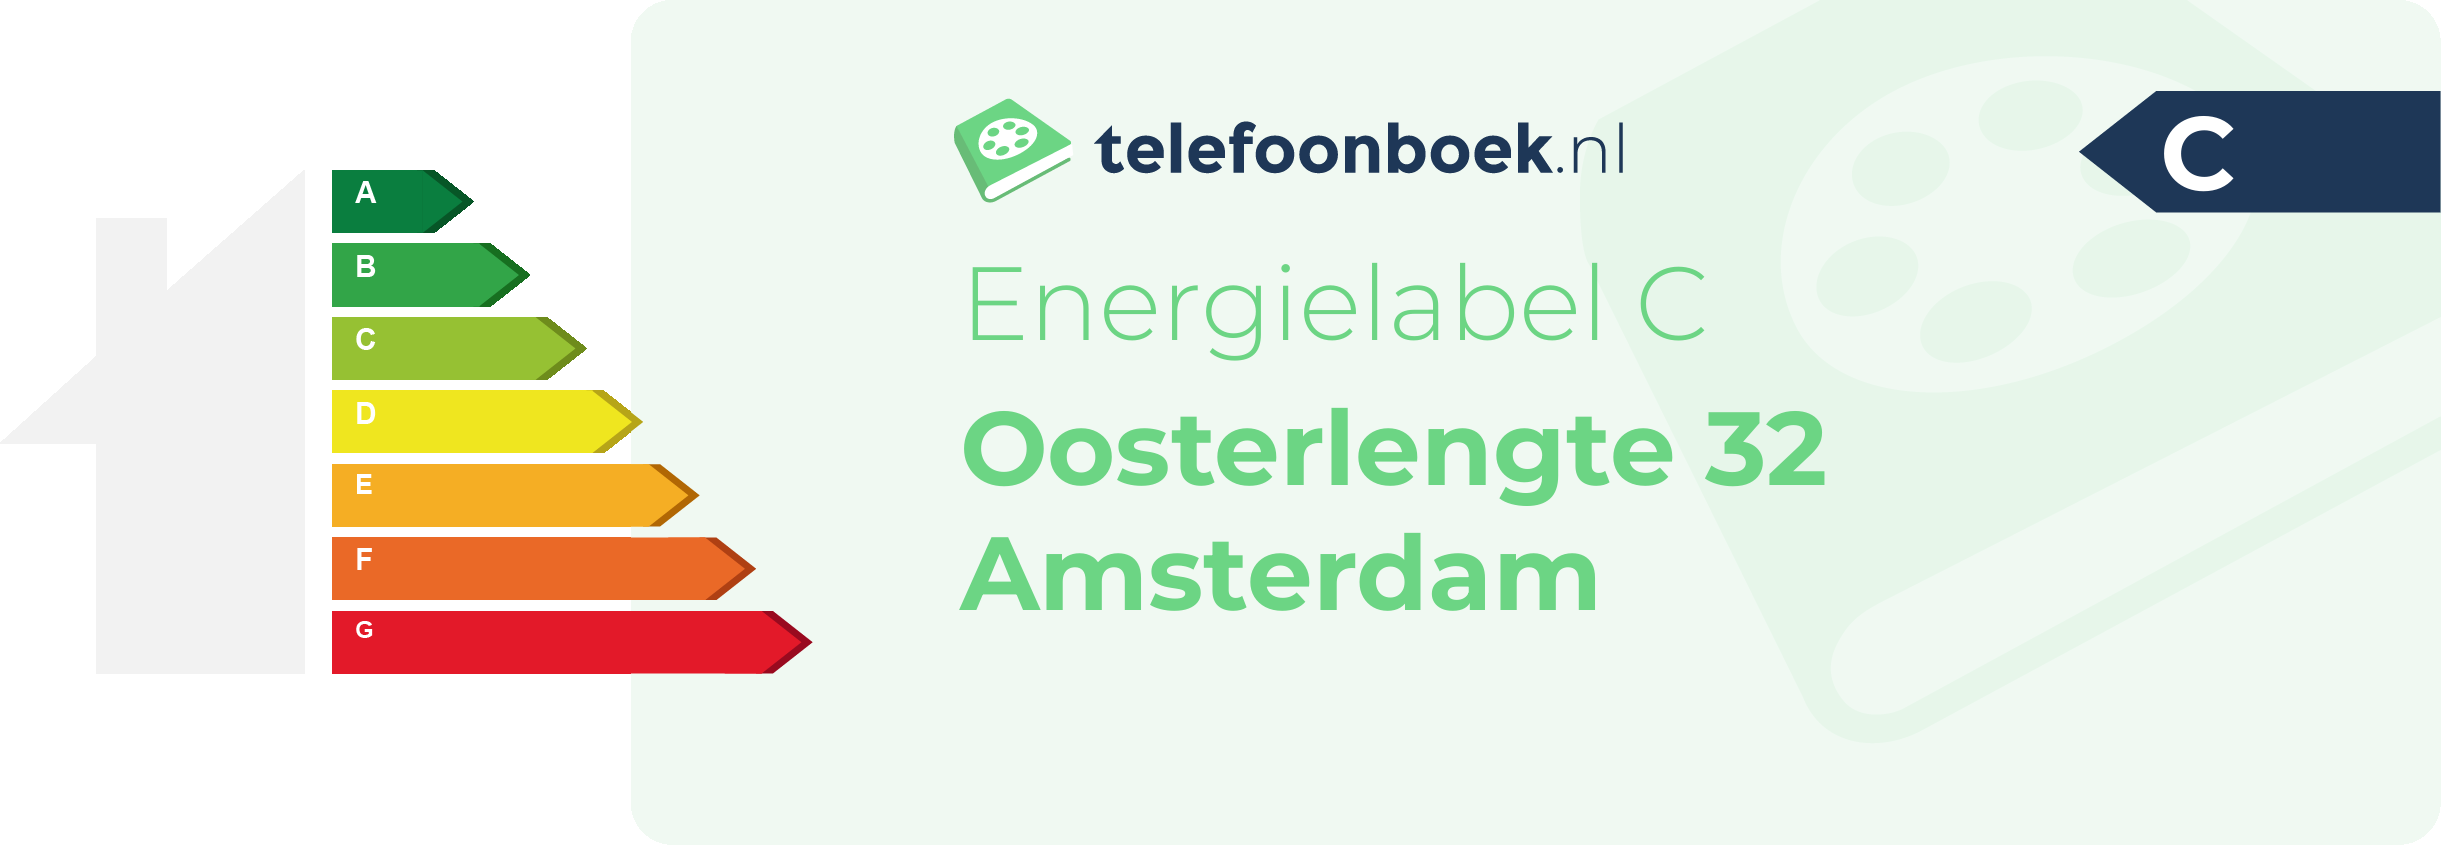 Energielabel Oosterlengte 32 Amsterdam